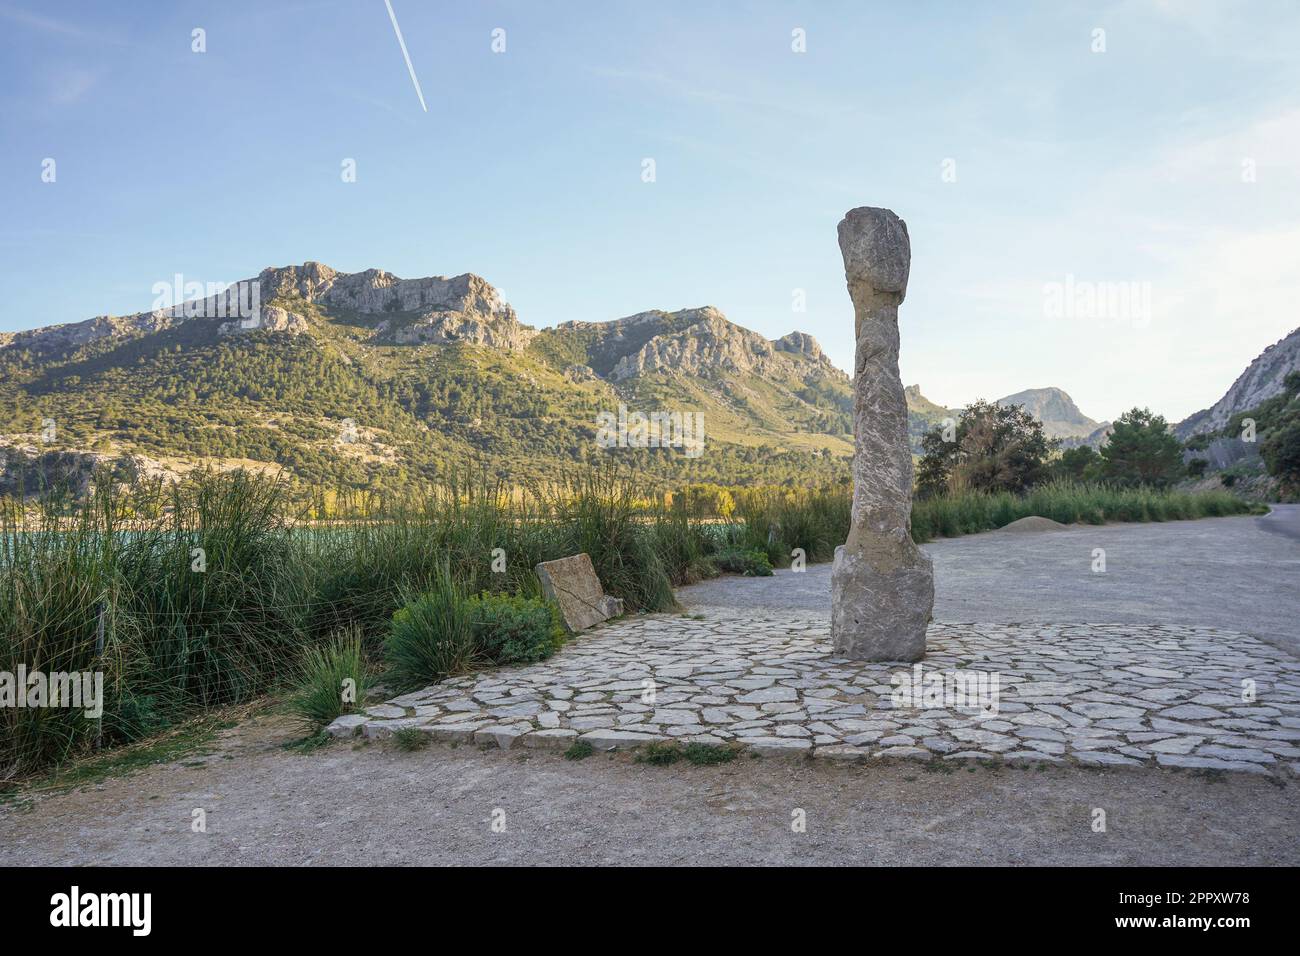 Santuario Columna, antike Säule Talaiotische Kultur am Gorg Blau ein künstlicher See der Tramuntana Berge, Sierra de Tramontana in Mallorca, Spanien. Stockfoto